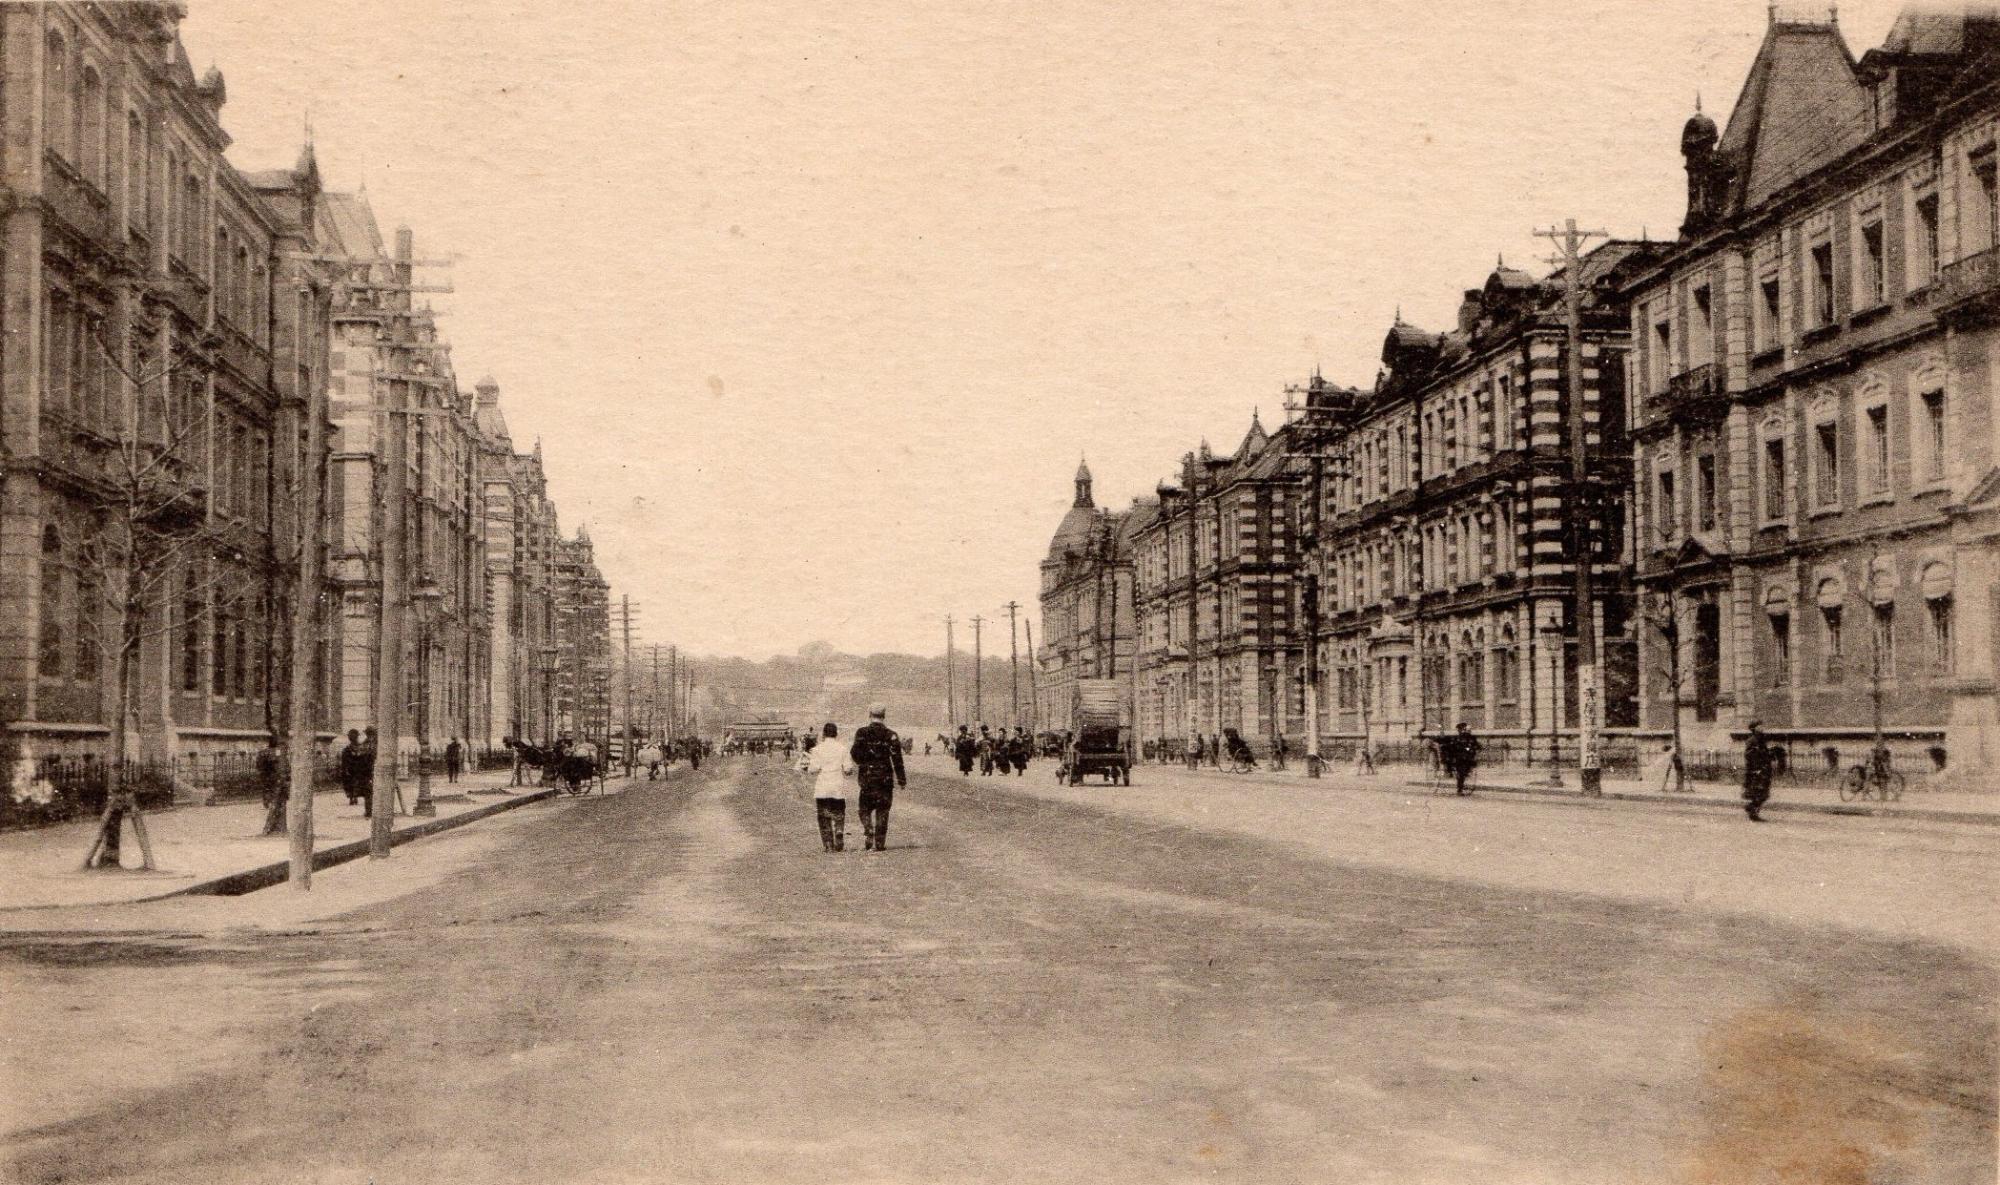 両側に煉瓦建築が建ち並び、馬場先通りを歩いている人々を写した白黒写真